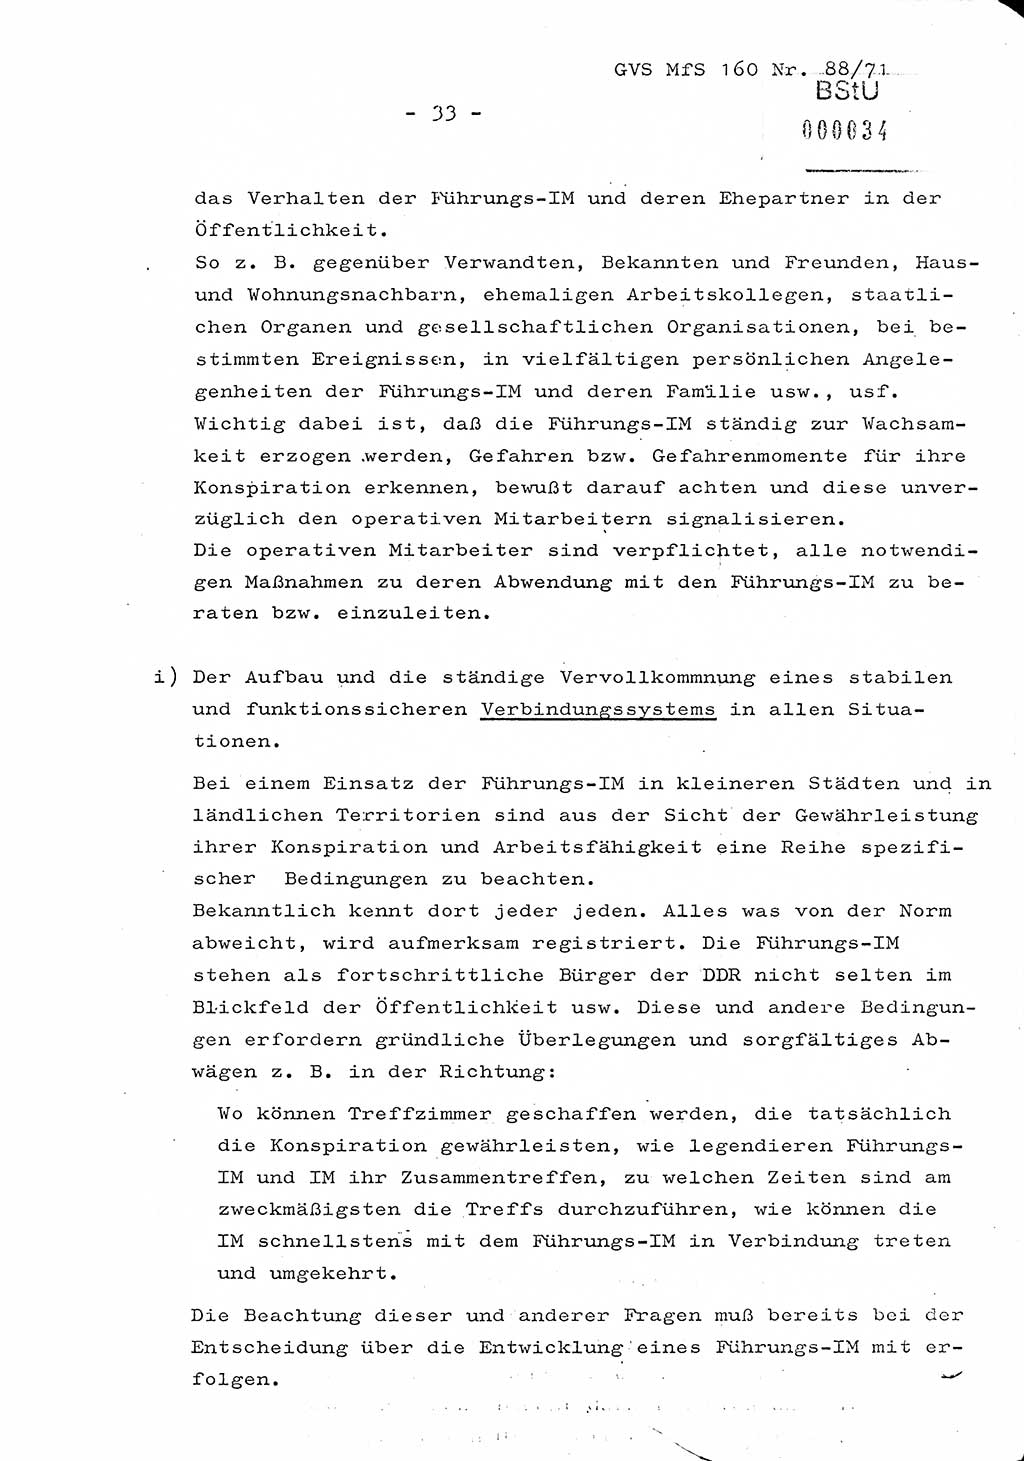 Dissertation Oberstleutnant Josef Schwarz (BV Schwerin), Major Fritz Amm (JHS), Hauptmann Peter Gräßler (JHS), Ministerium für Staatssicherheit (MfS) [Deutsche Demokratische Republik (DDR)], Juristische Hochschule (JHS), Geheime Verschlußsache (GVS) 160-88/71, Potsdam 1972, Seite 33 (Diss. MfS DDR JHS GVS 160-88/71 1972, S. 33)